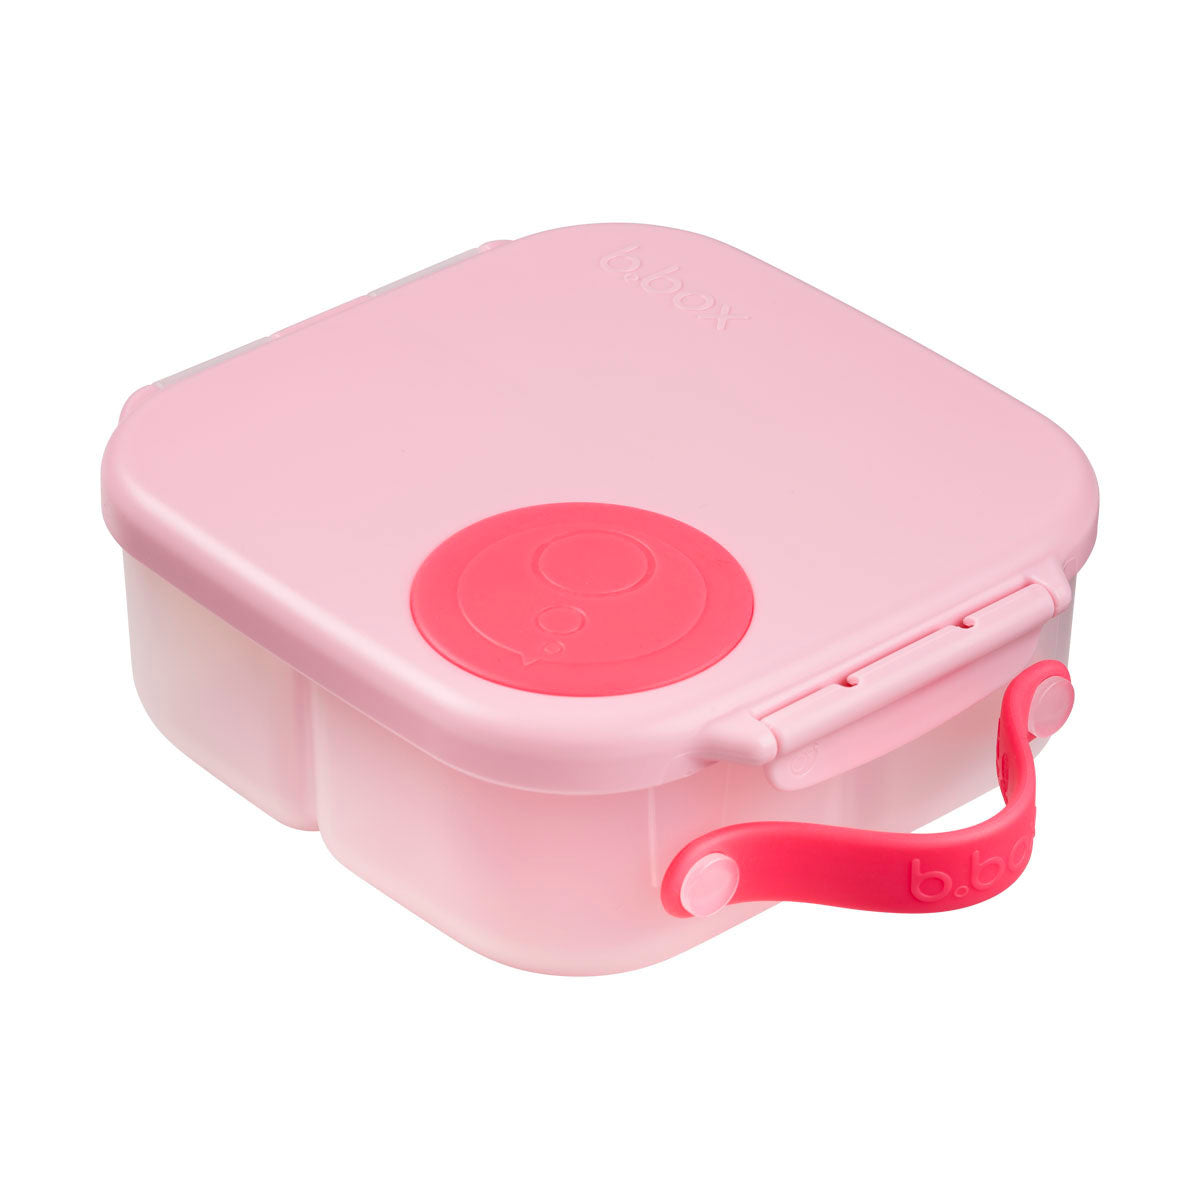 Flamingo fizz pink lunch box mini by bbox